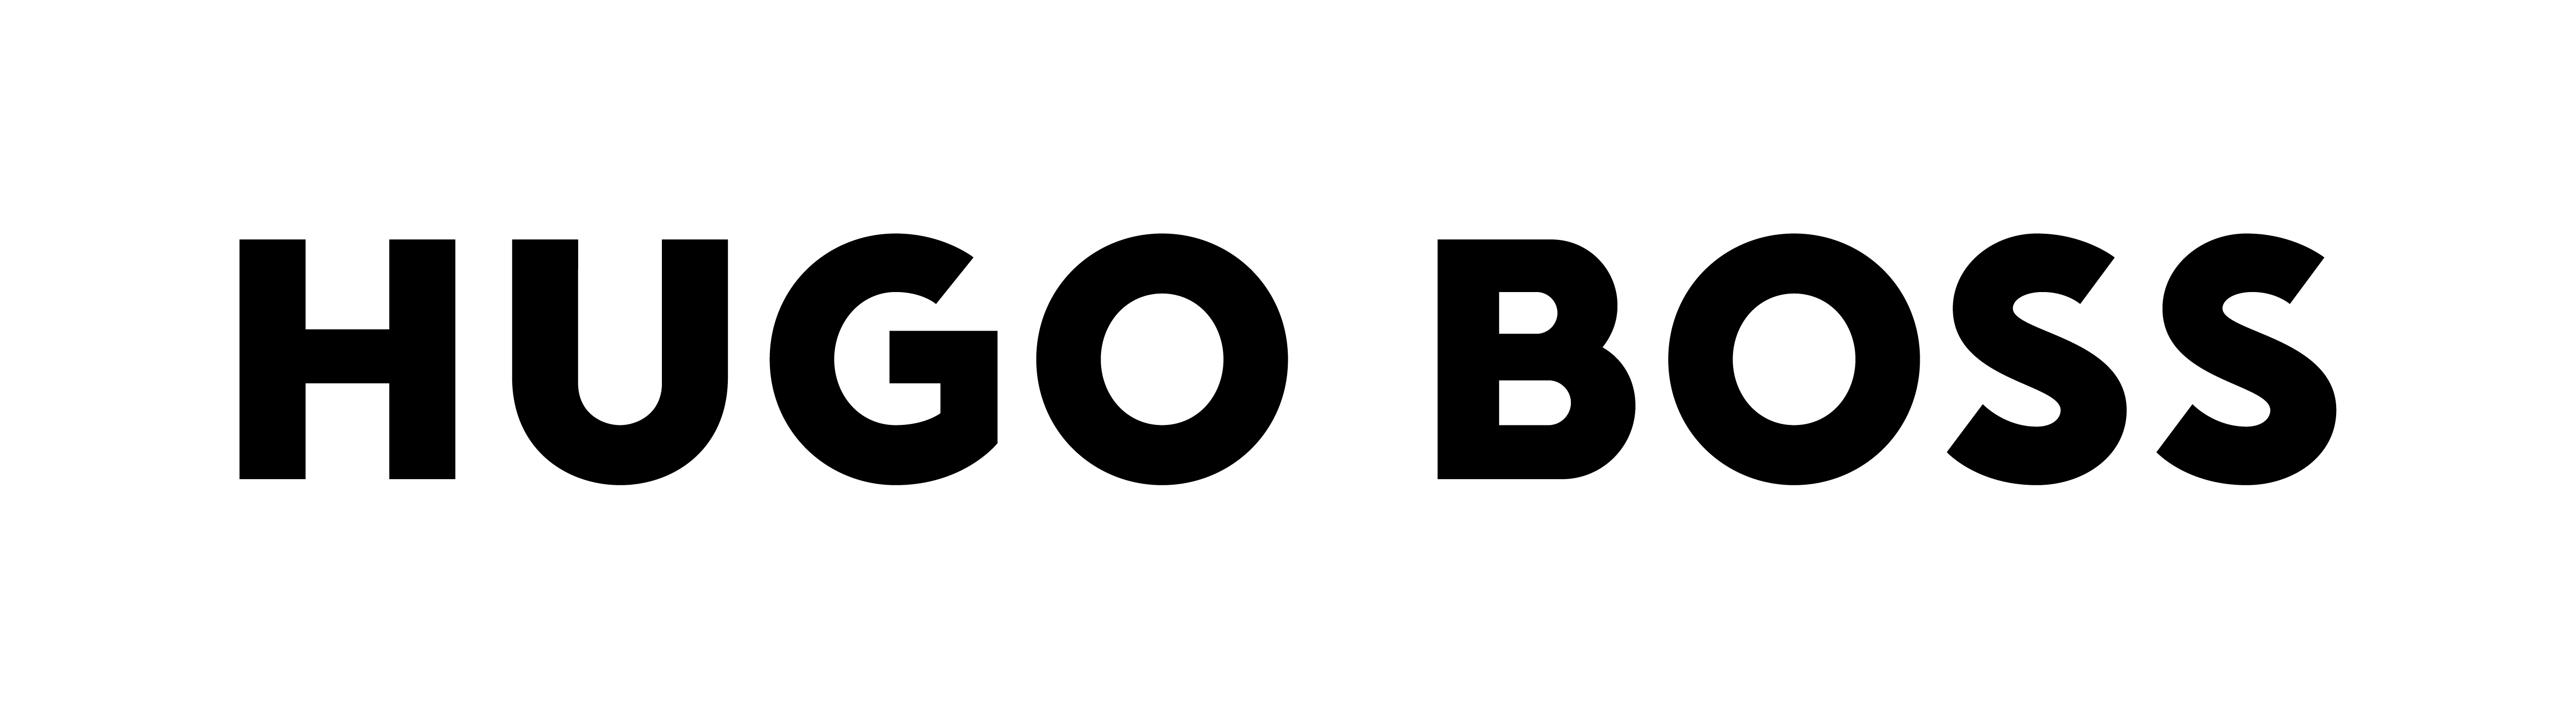 나의 검색 기업 휴고보스코리아의 로고 이미지